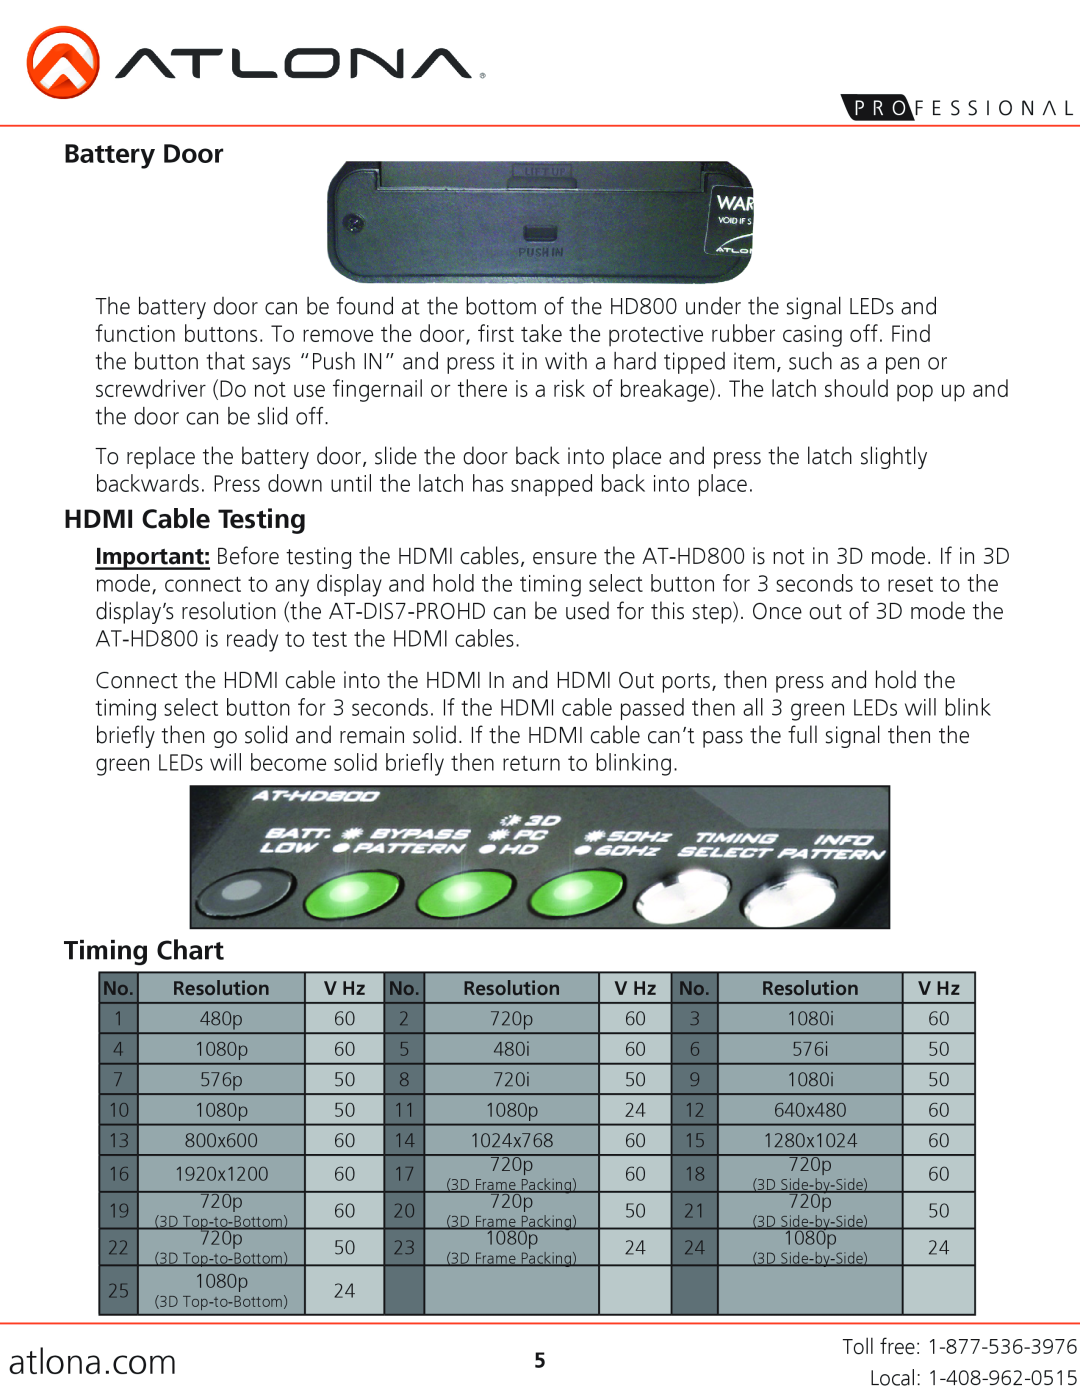 Atlona AT-HD800 user manual Battery Door, HDMI Cable Testing, Timing Chart, atlona.com 